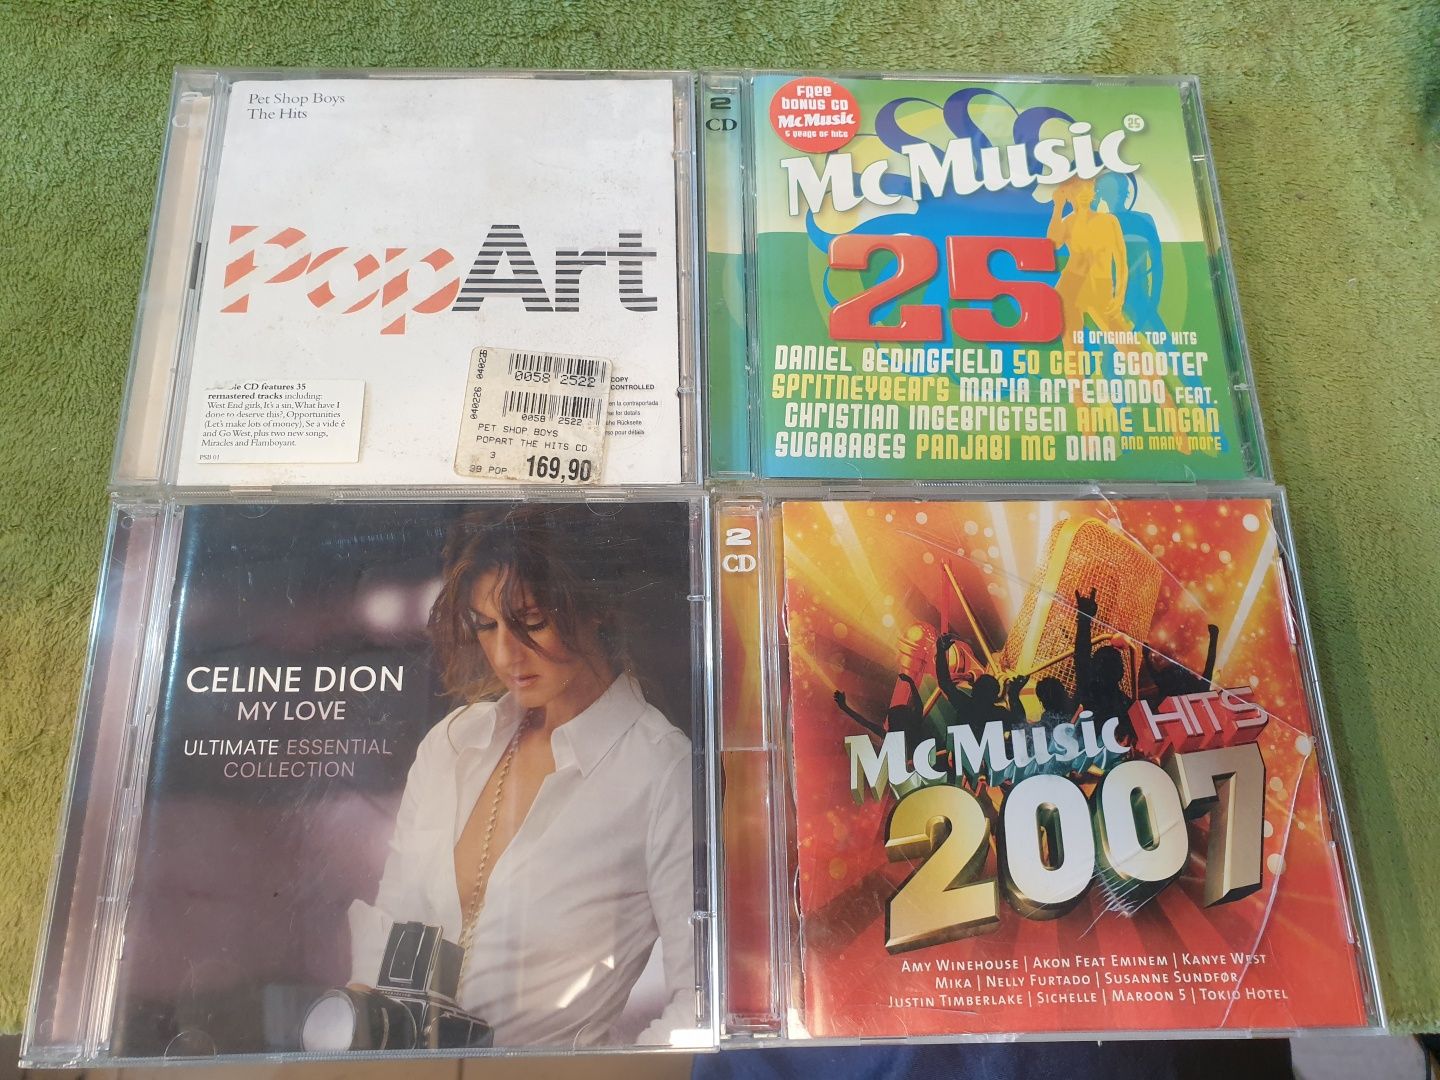 4 podwójne płyty CD różni wykonawcy.